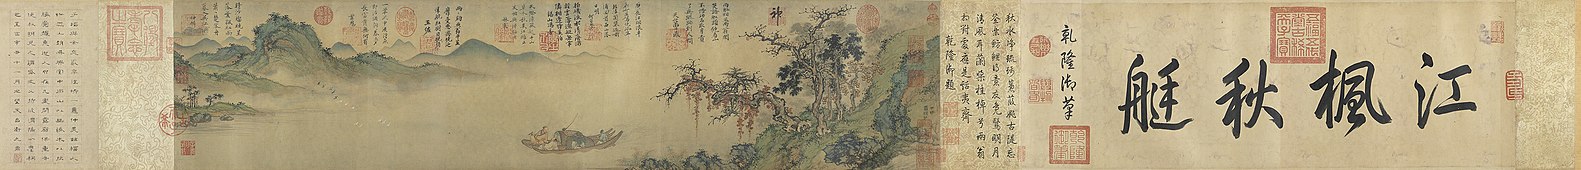 Boottocht op de rivier in de herfst, een handrol uit 1361 van Sheng Mao